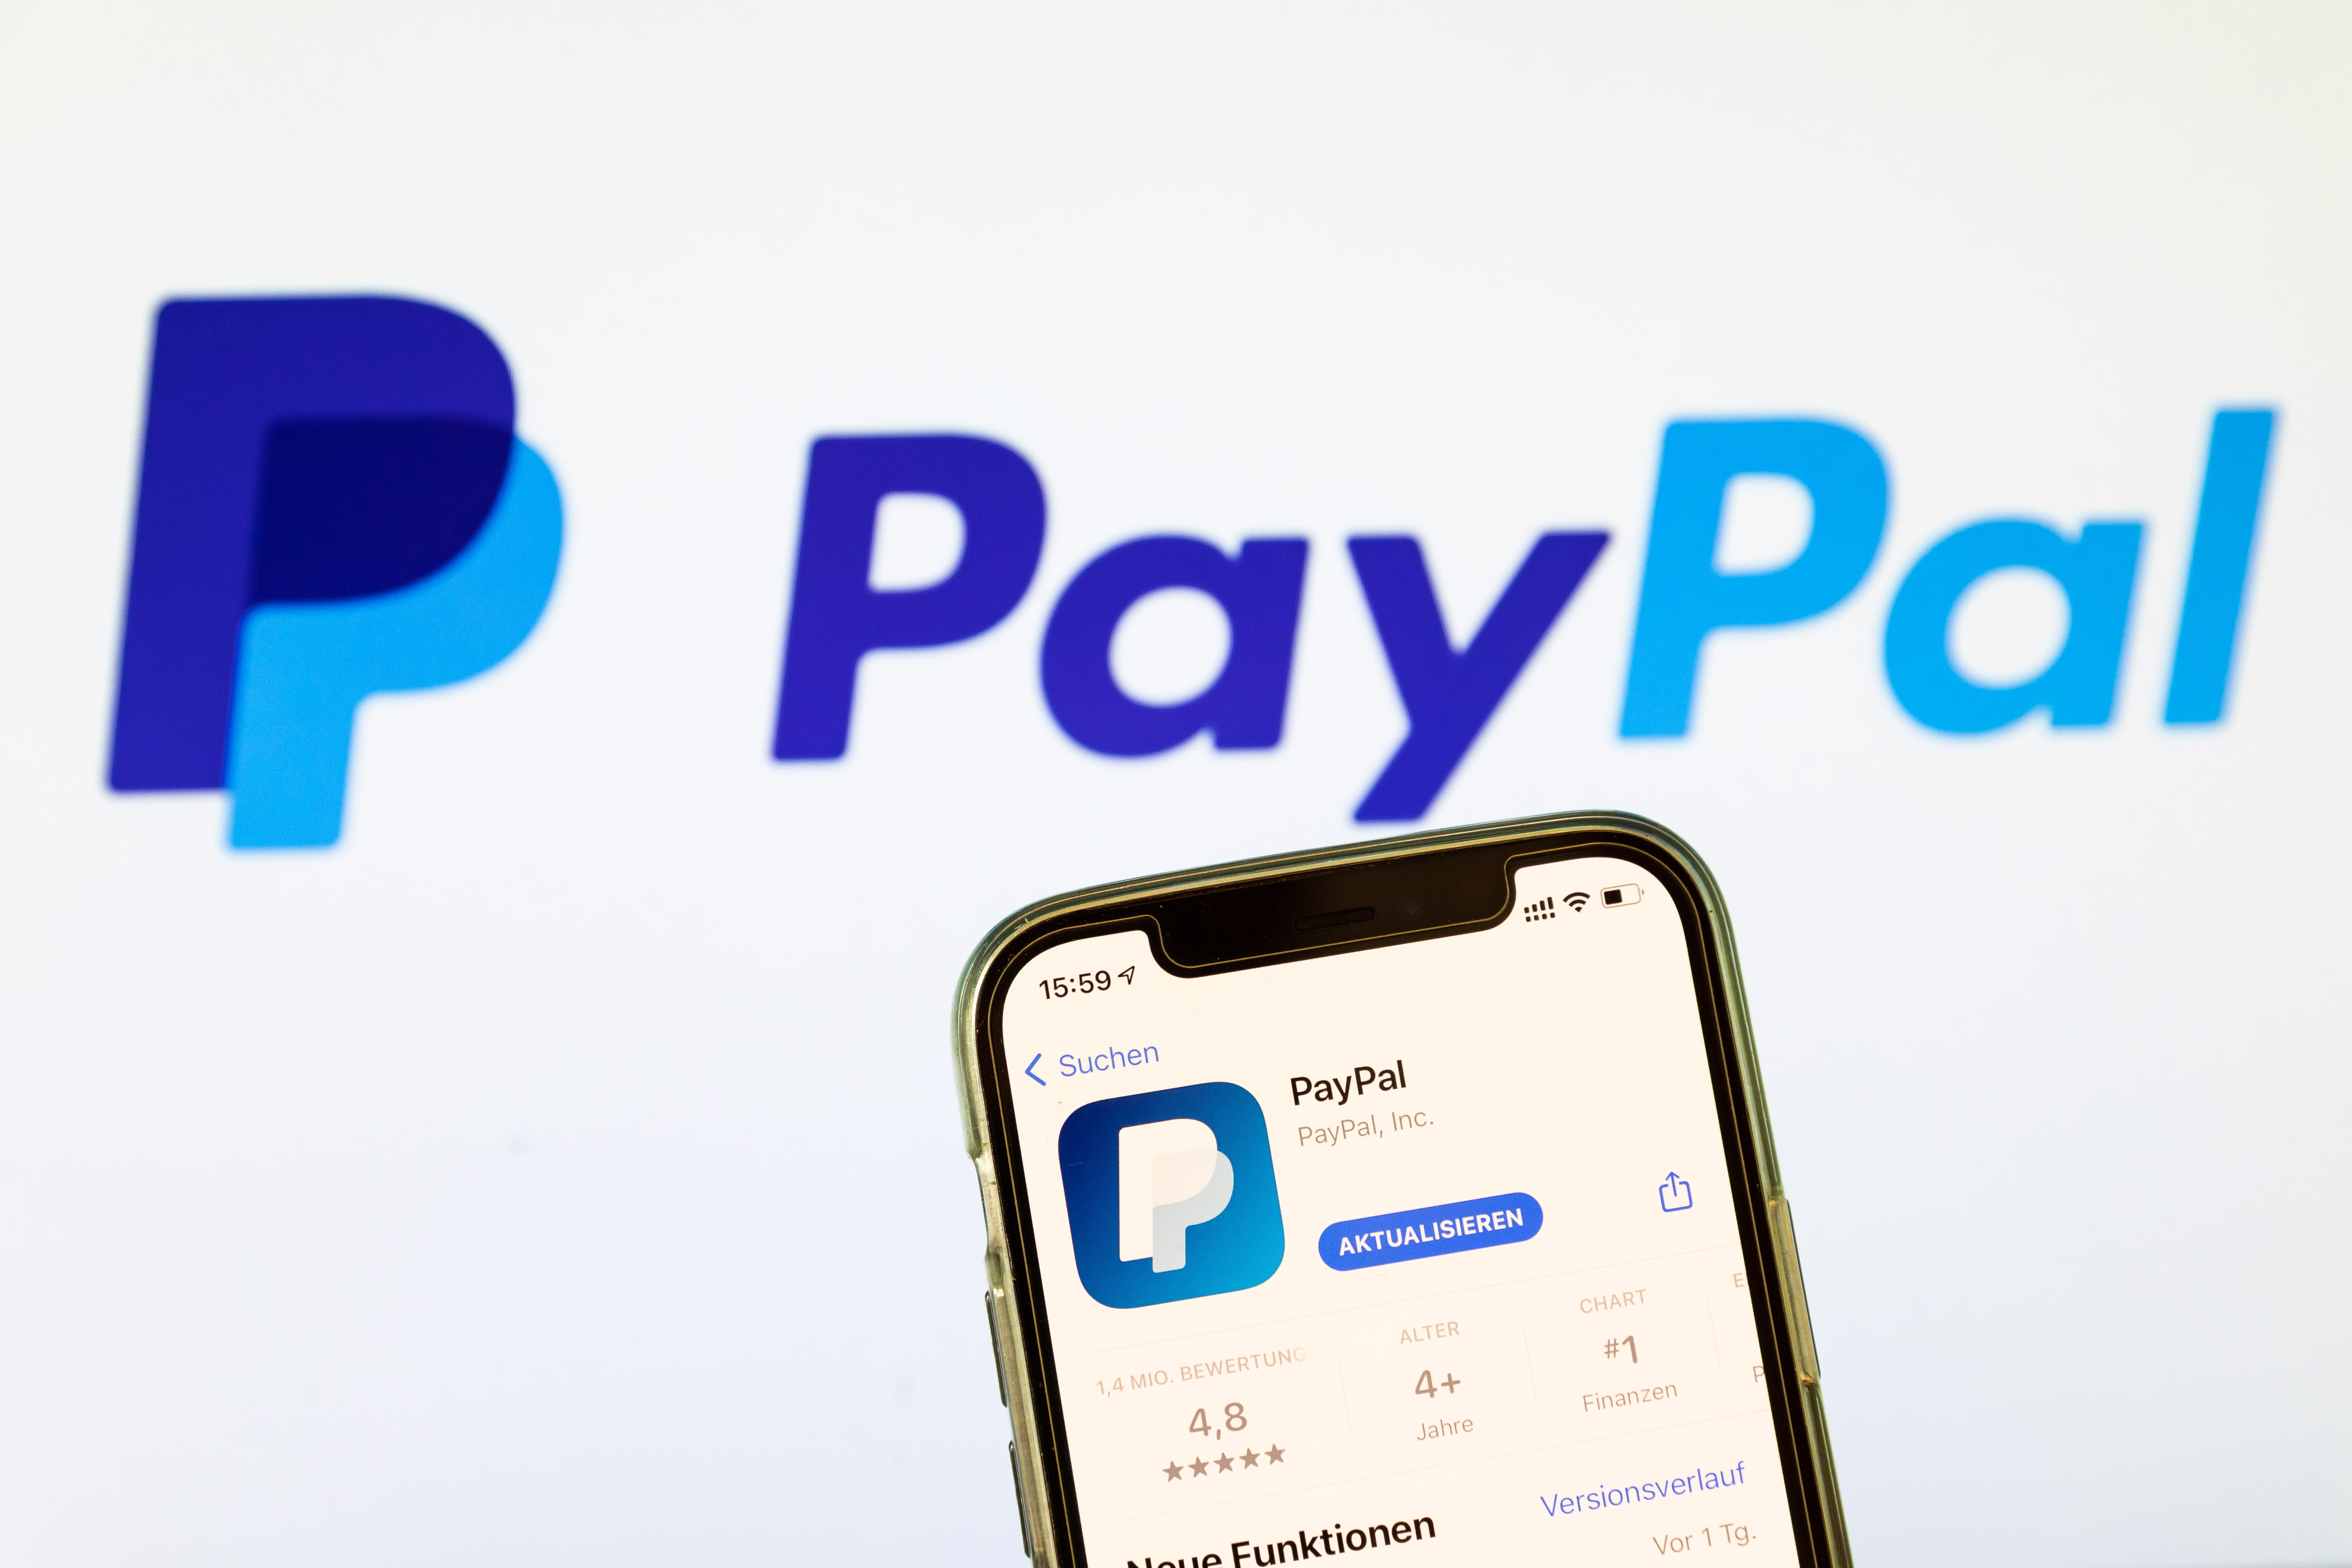 Ứng dụng PayPal được hiển thị trên iPhone